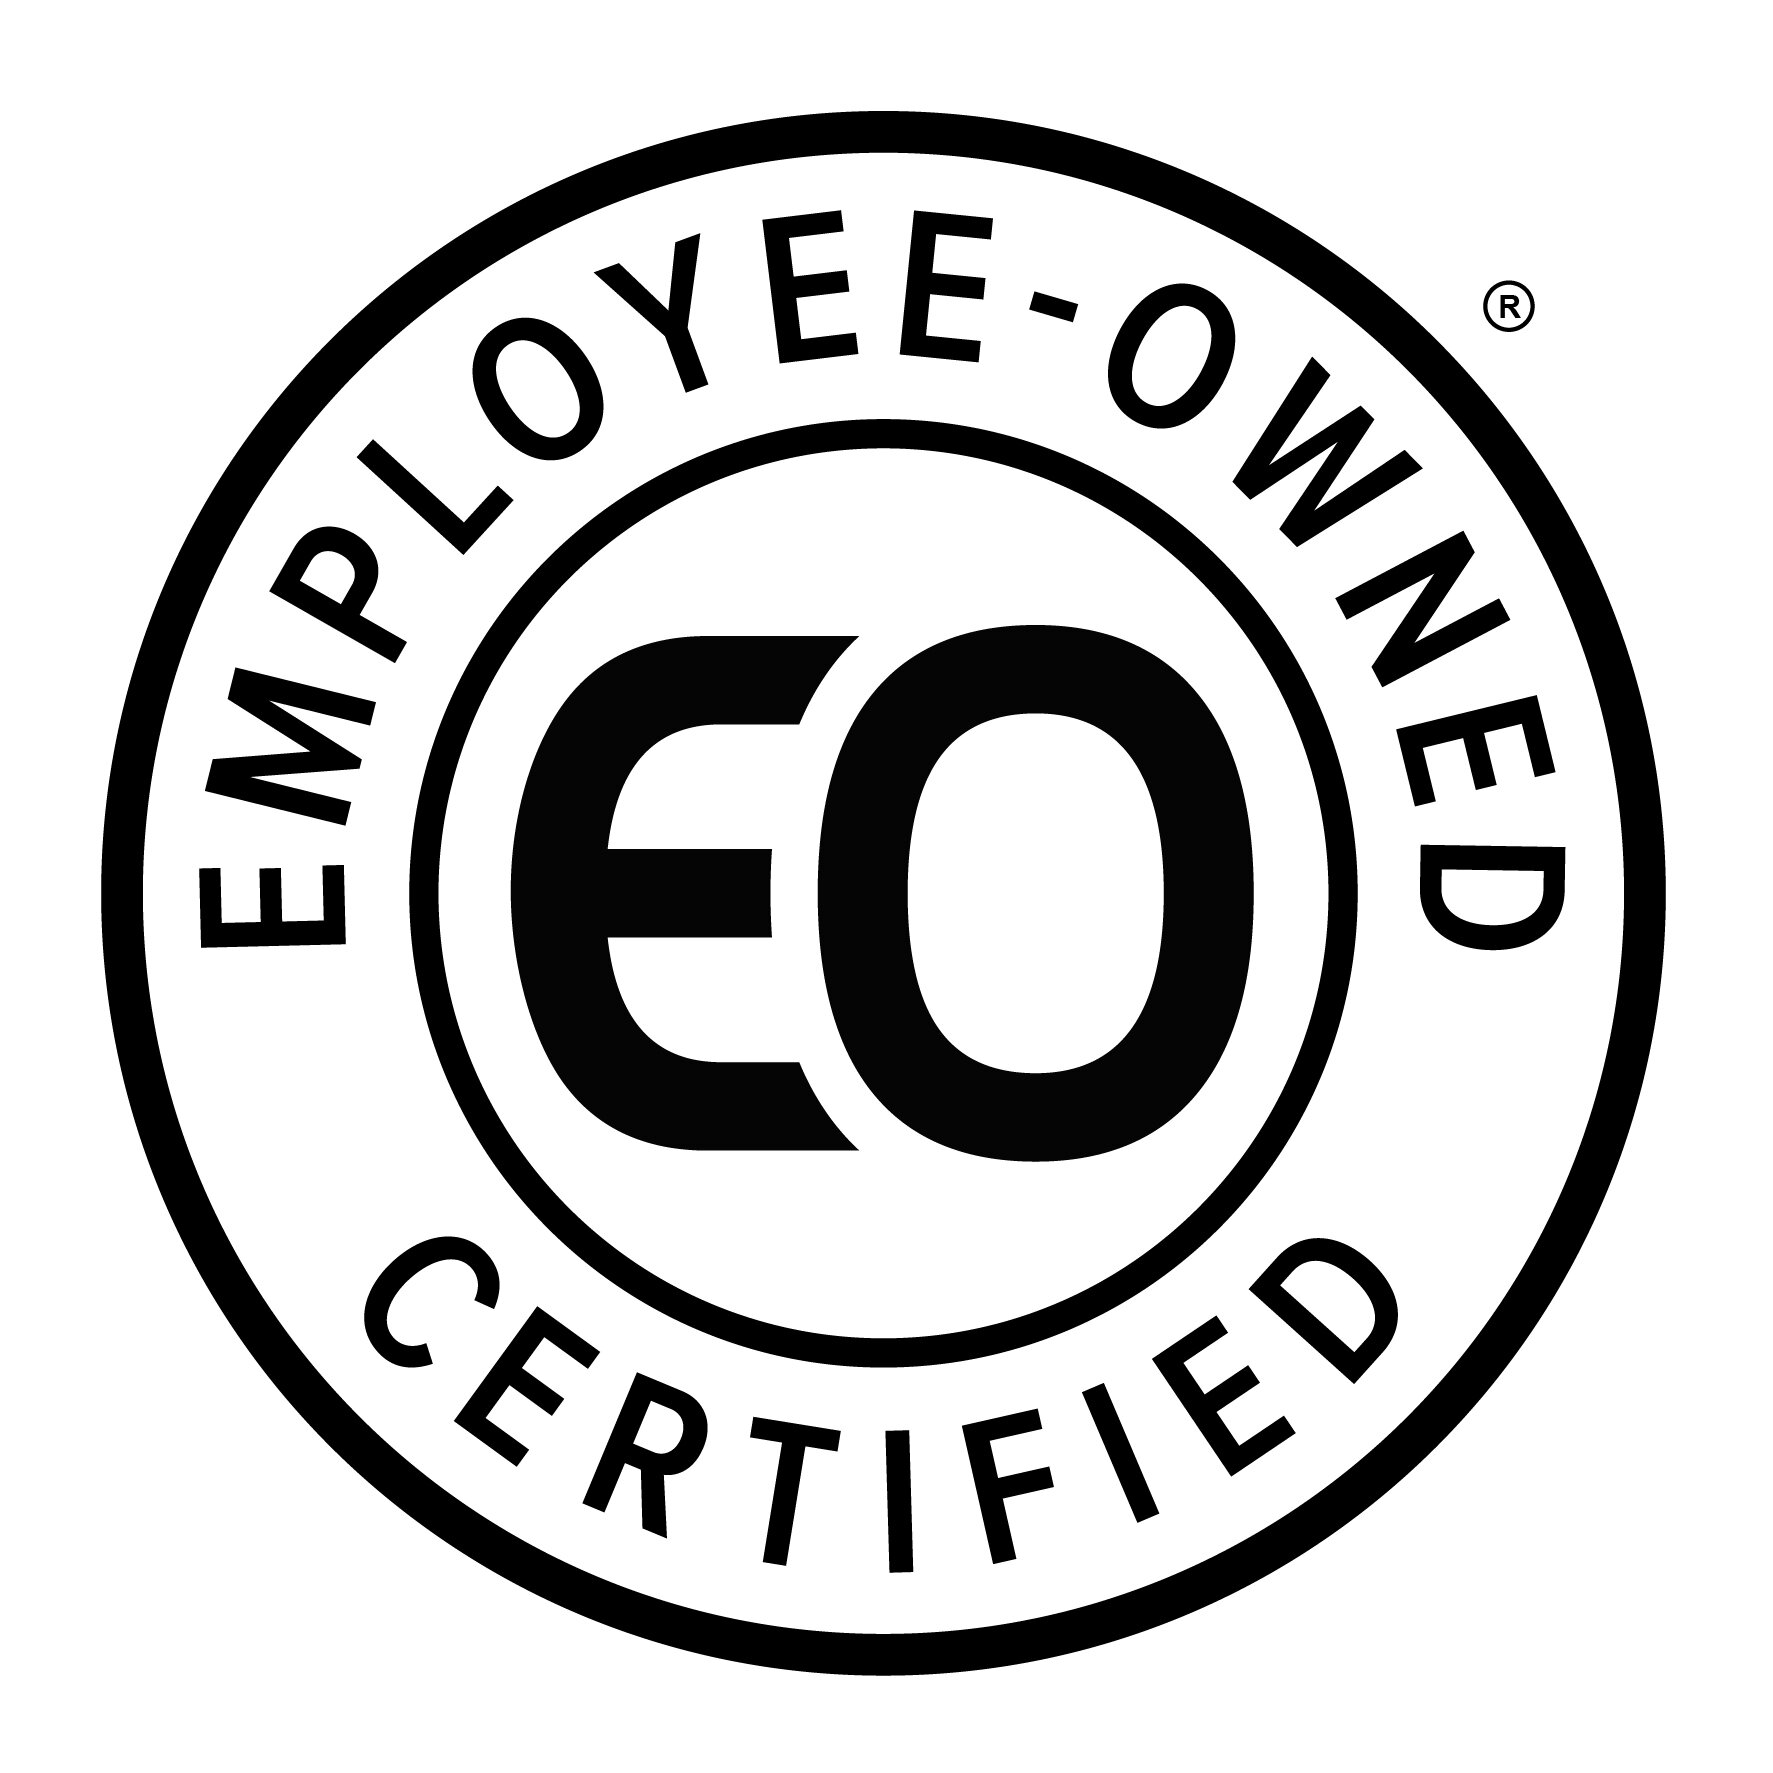 Certified-EO-Mark-black.jpg